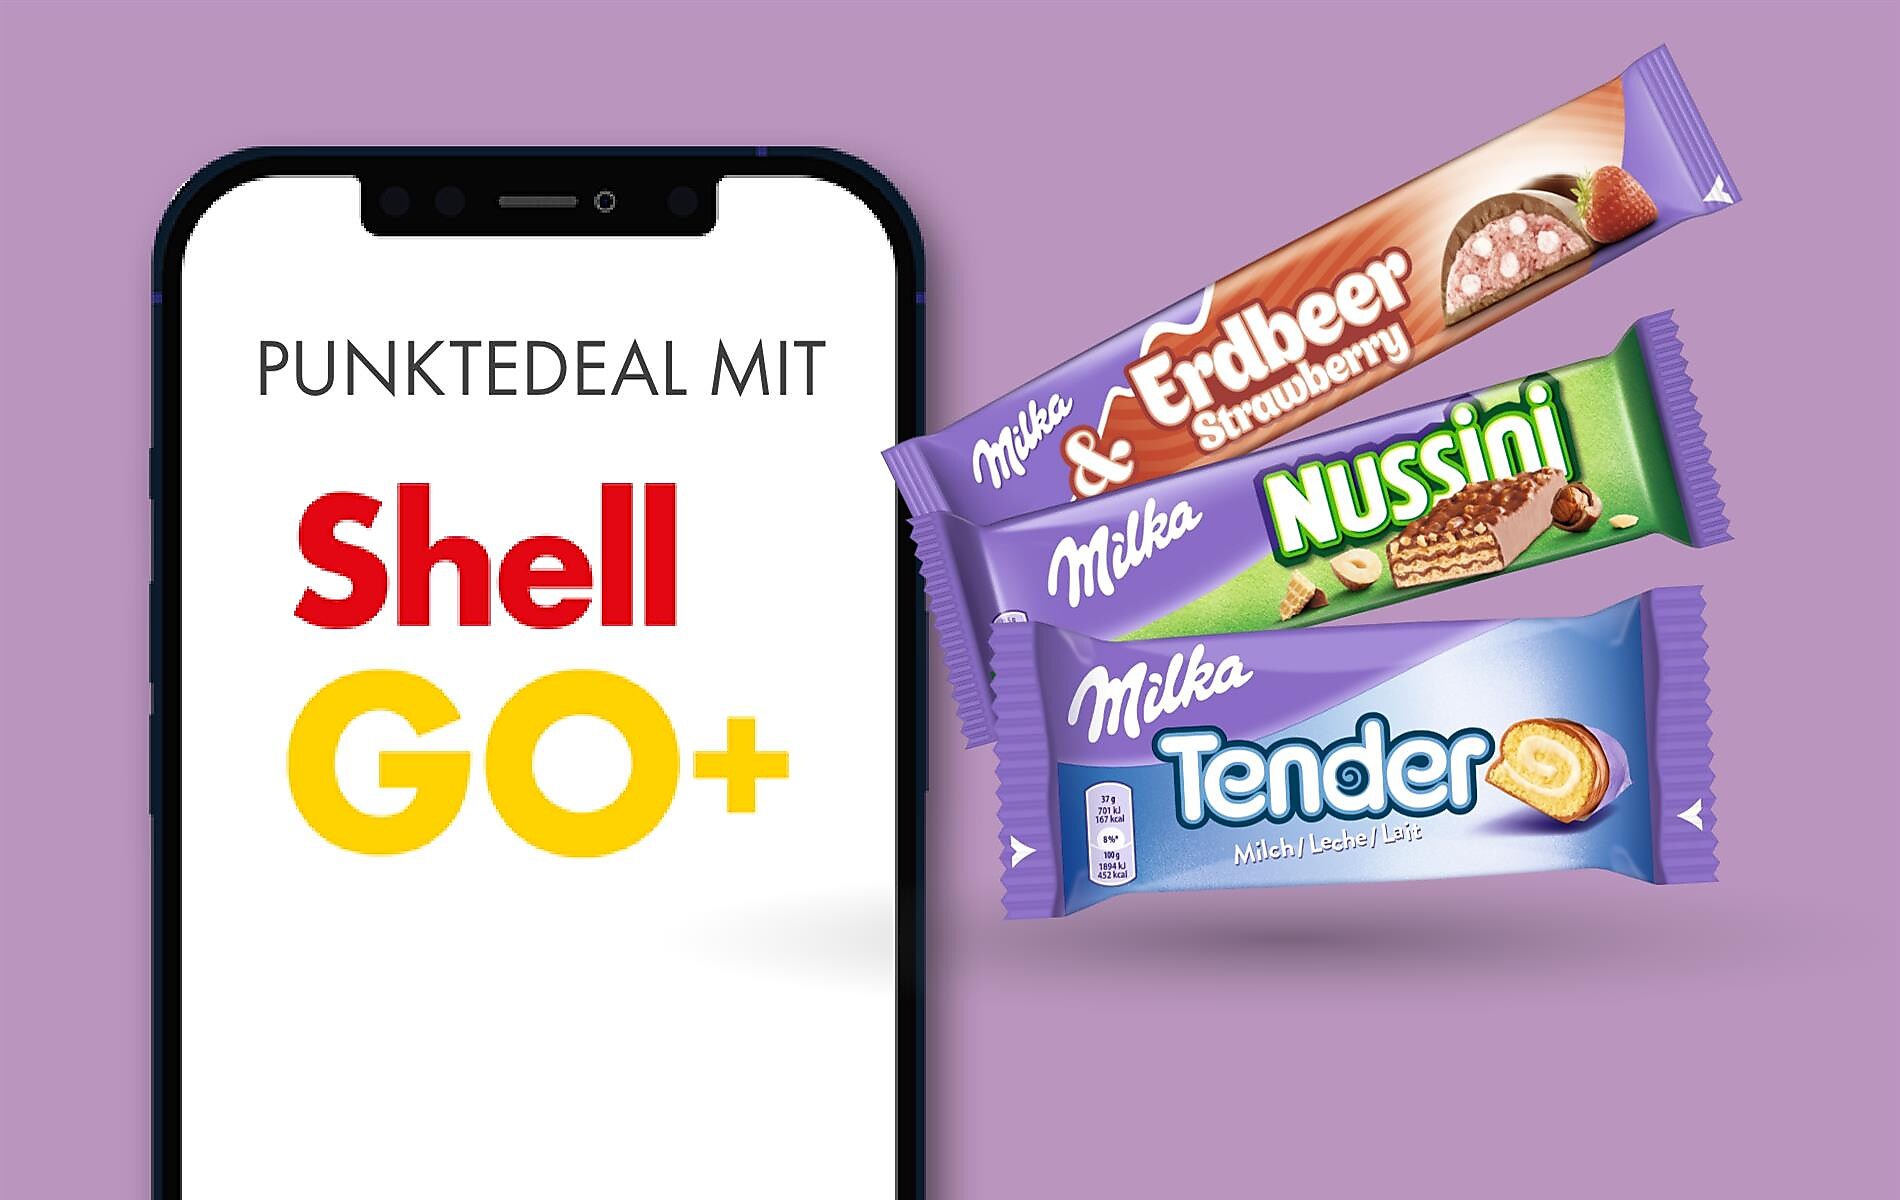 Shell Go+ Punktedeal: Milka Riegel um 80 Pkte